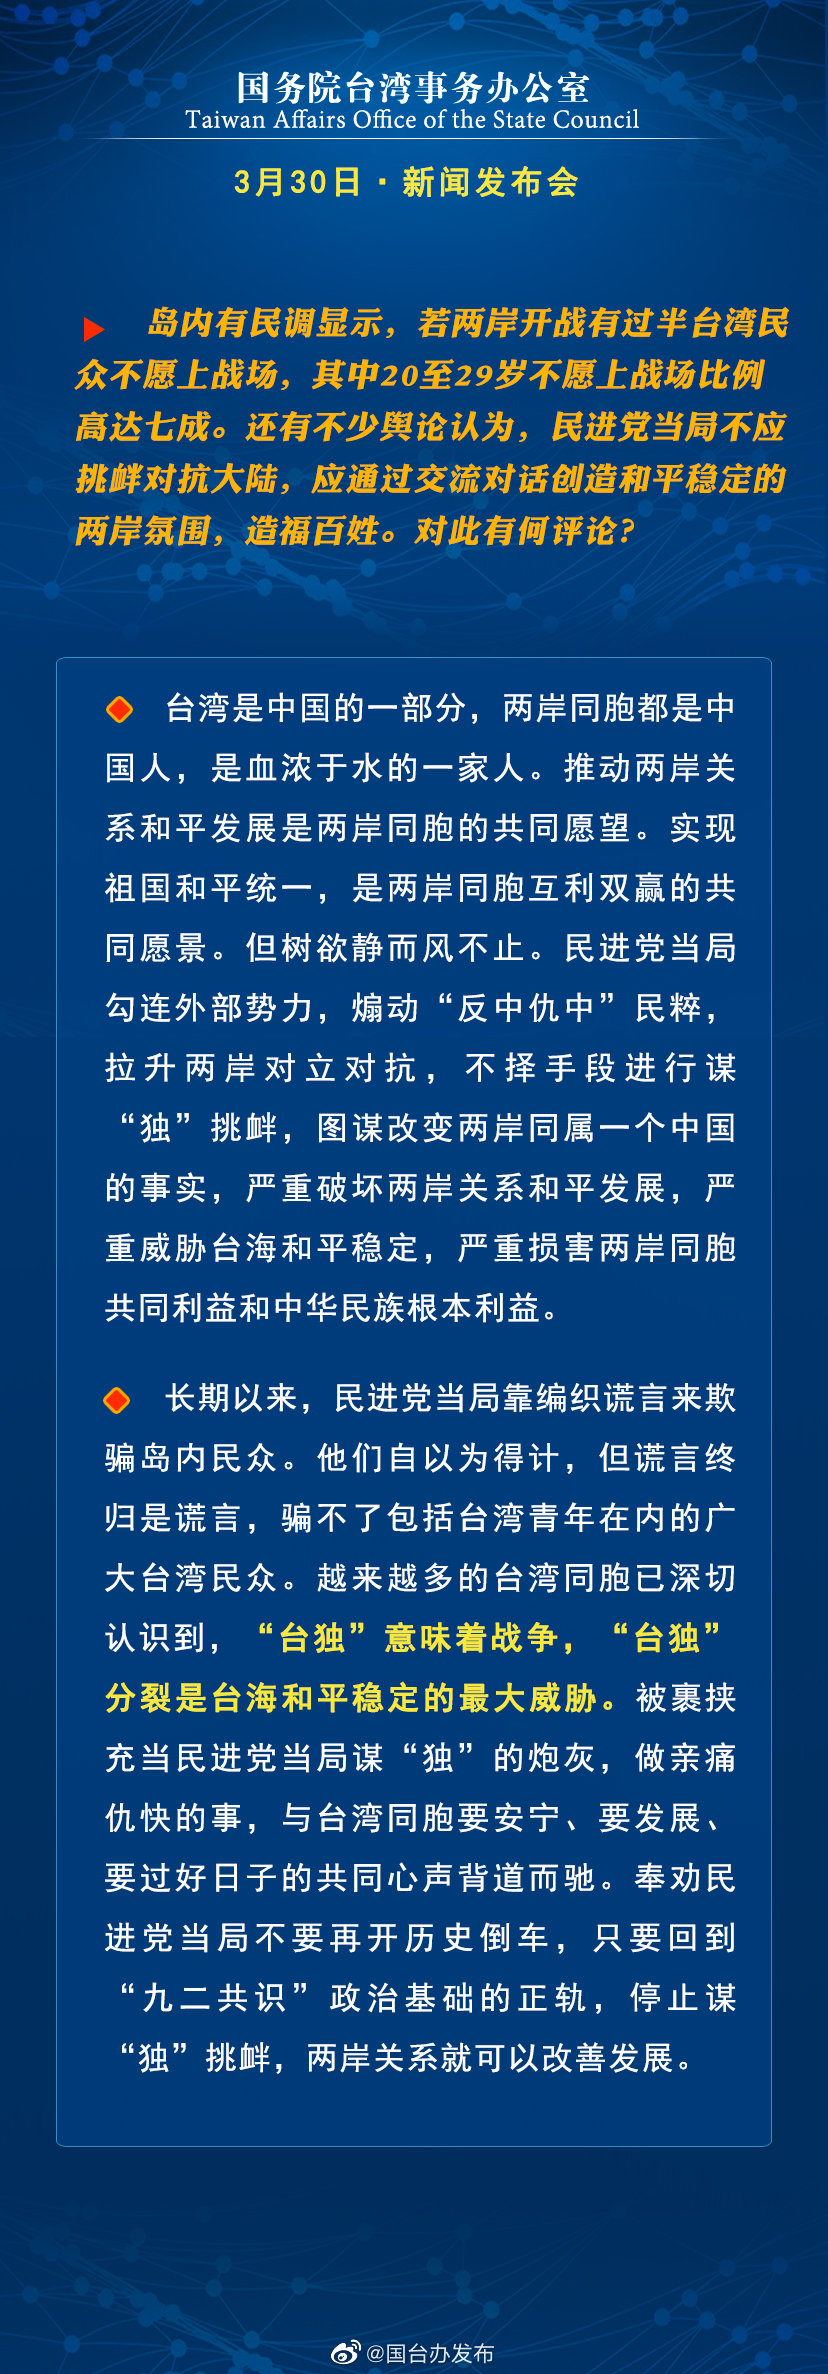 国务院台湾事务办公室3月30日·新闻发布会